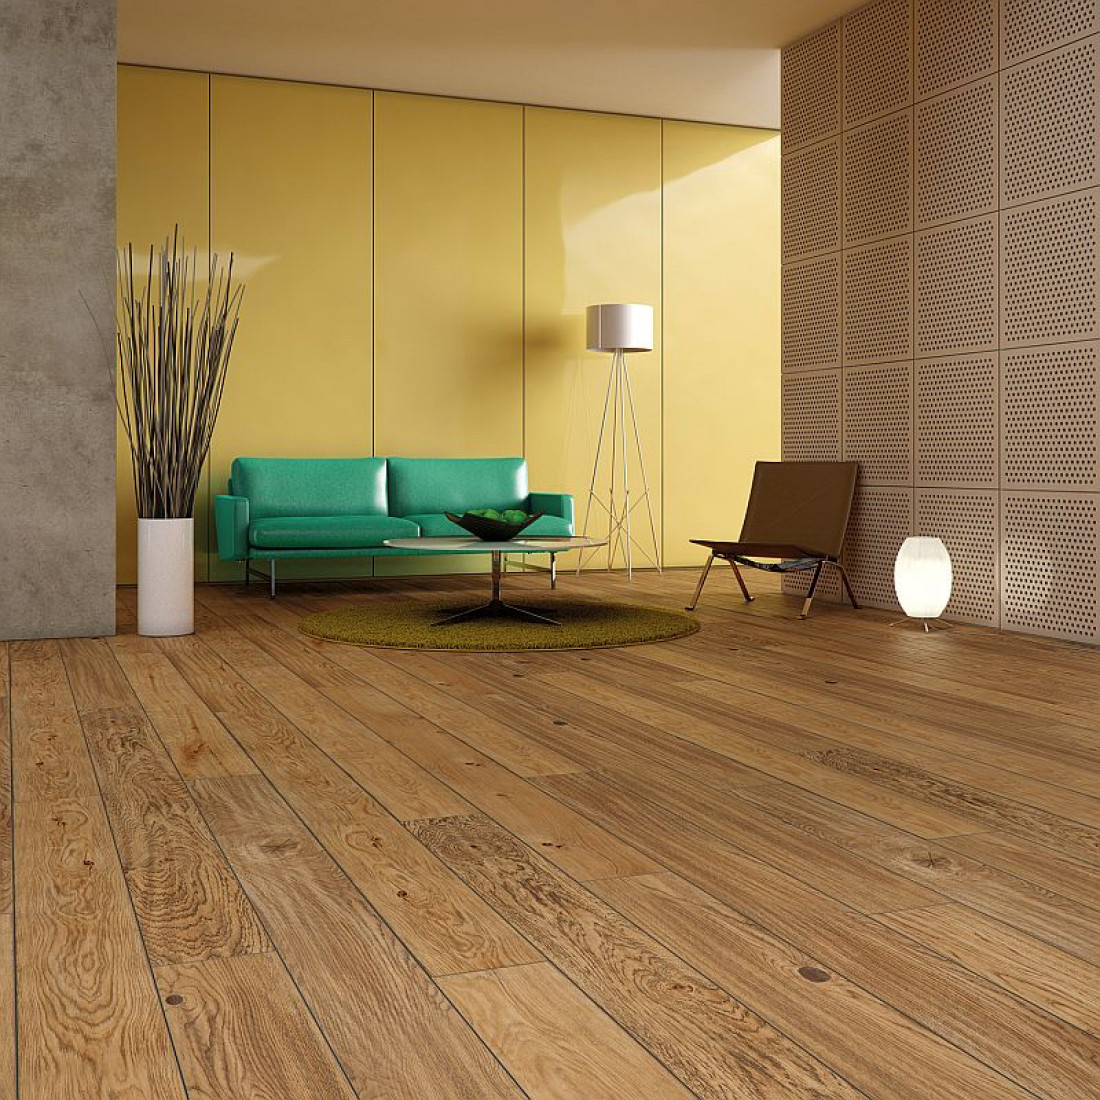 Naturalne piękno i nowoczesna funkcjonalność – podłogi Baltic Wood w modnym wnętrzu